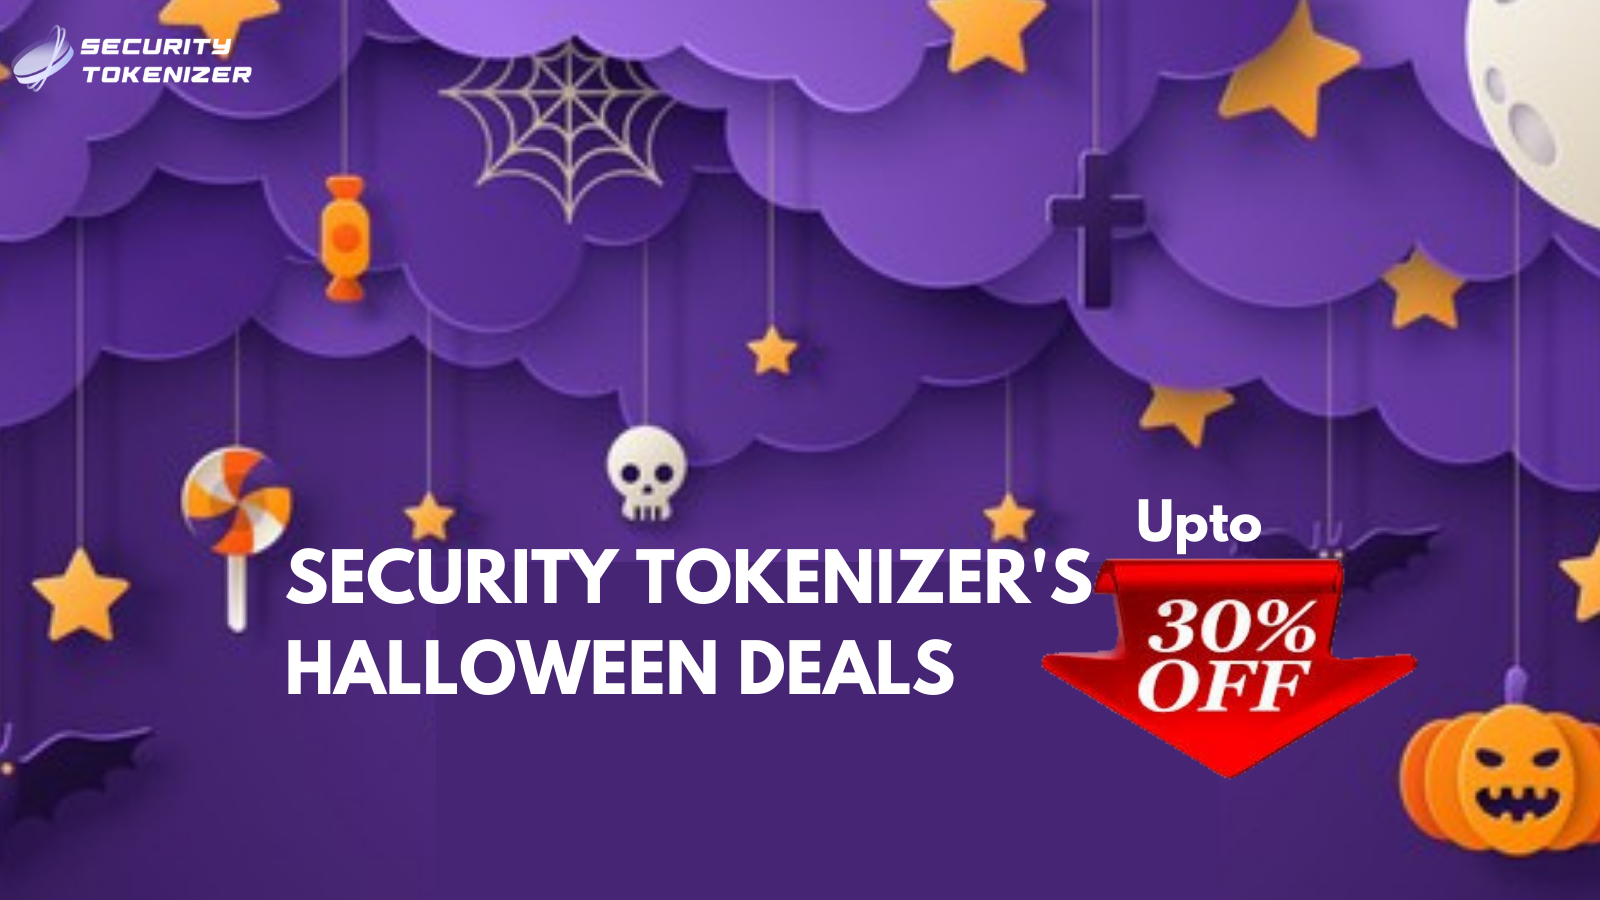 Security Tokenizer’s Exclusive Deals For Halloween 2021